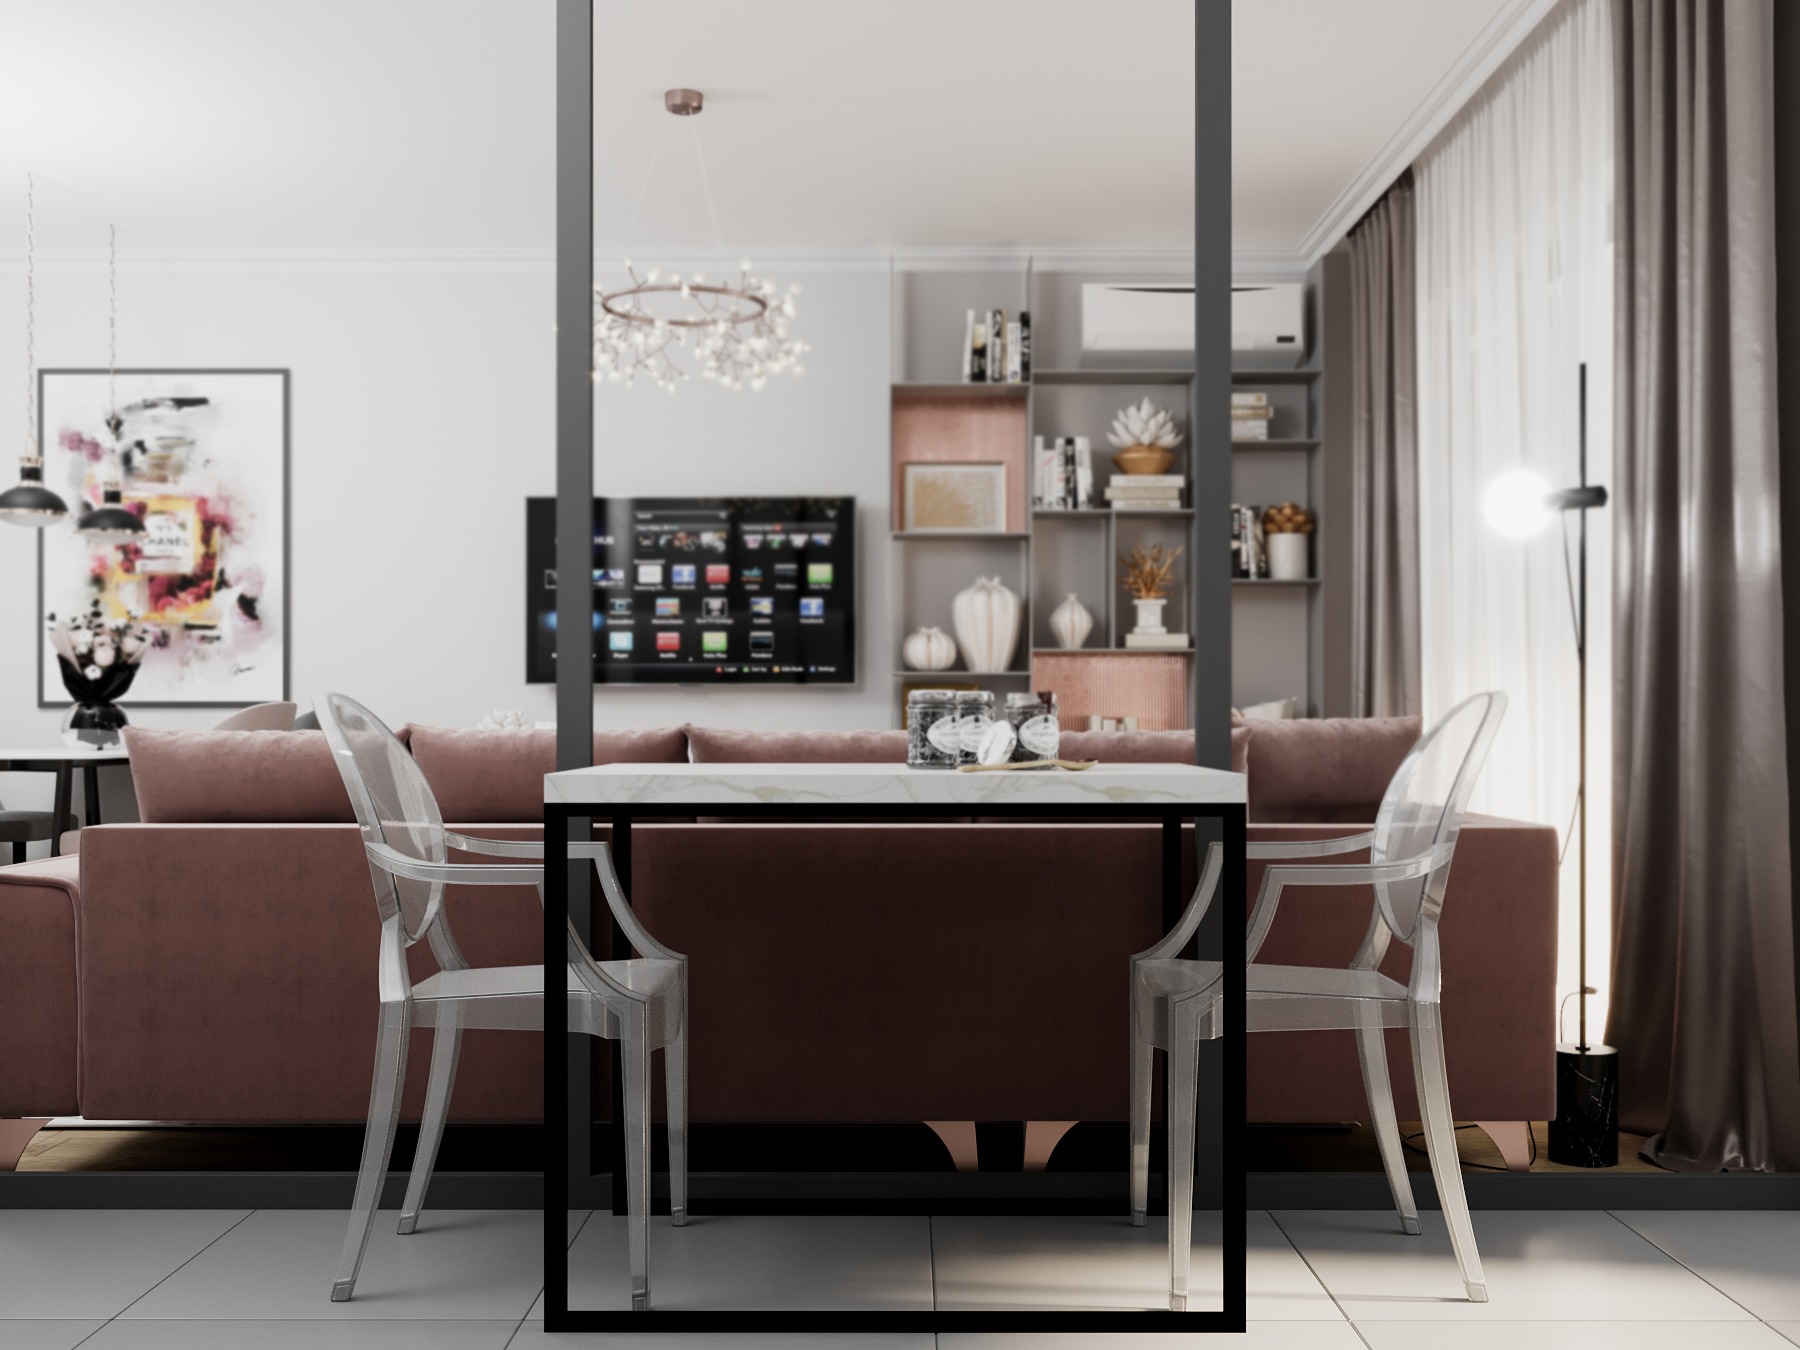 Design interior apartament lux